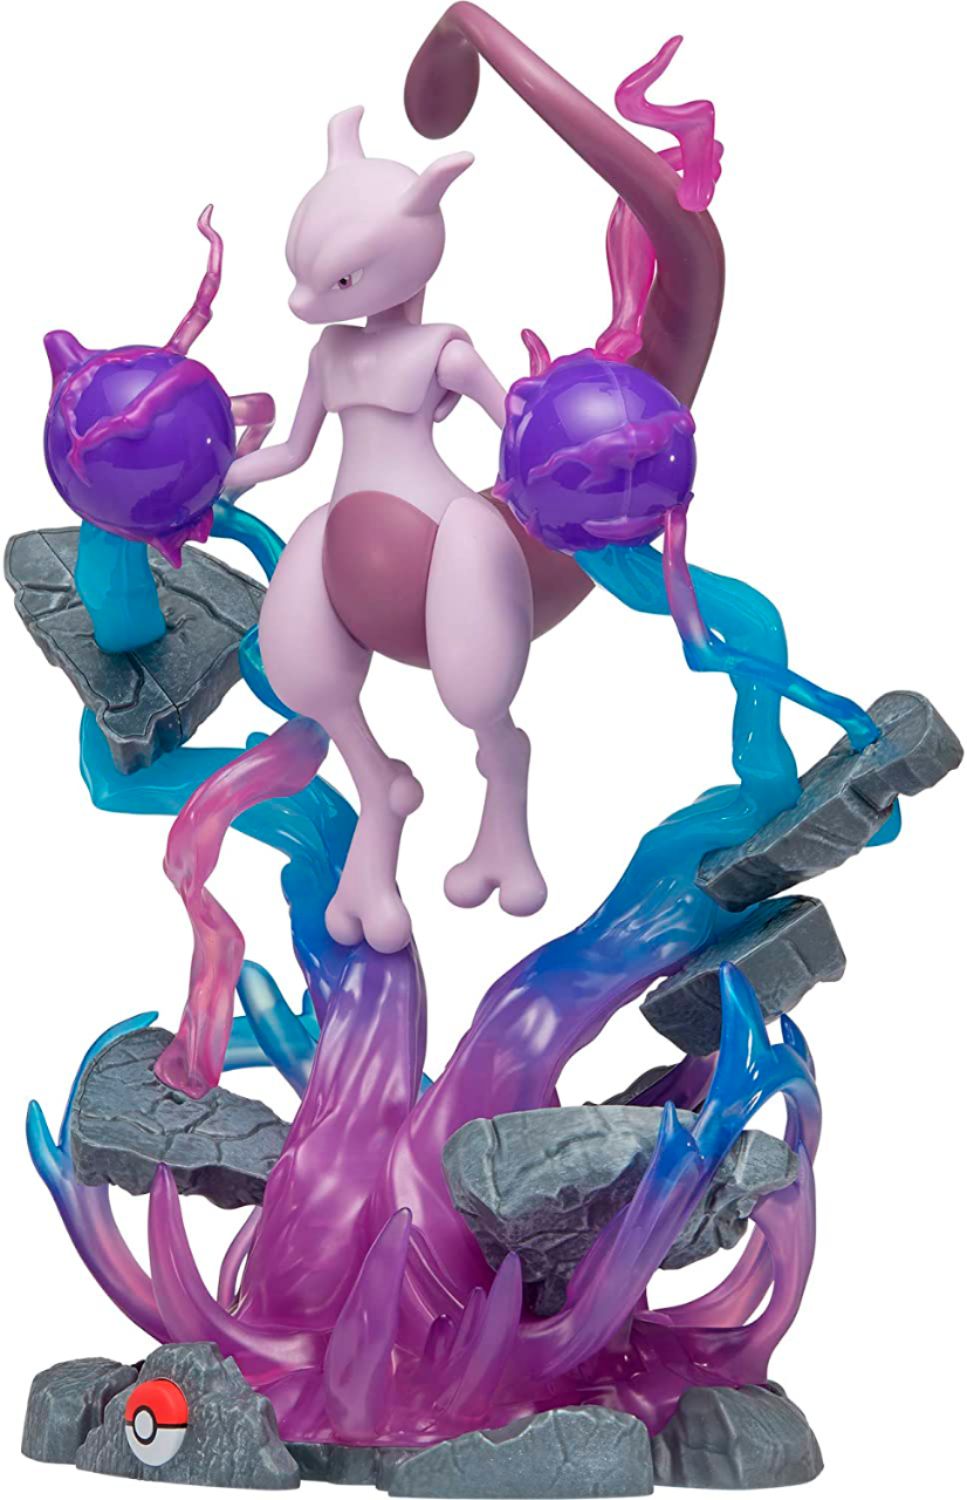 Pokémon Mewtwo Statue - Spec Fiction Shop